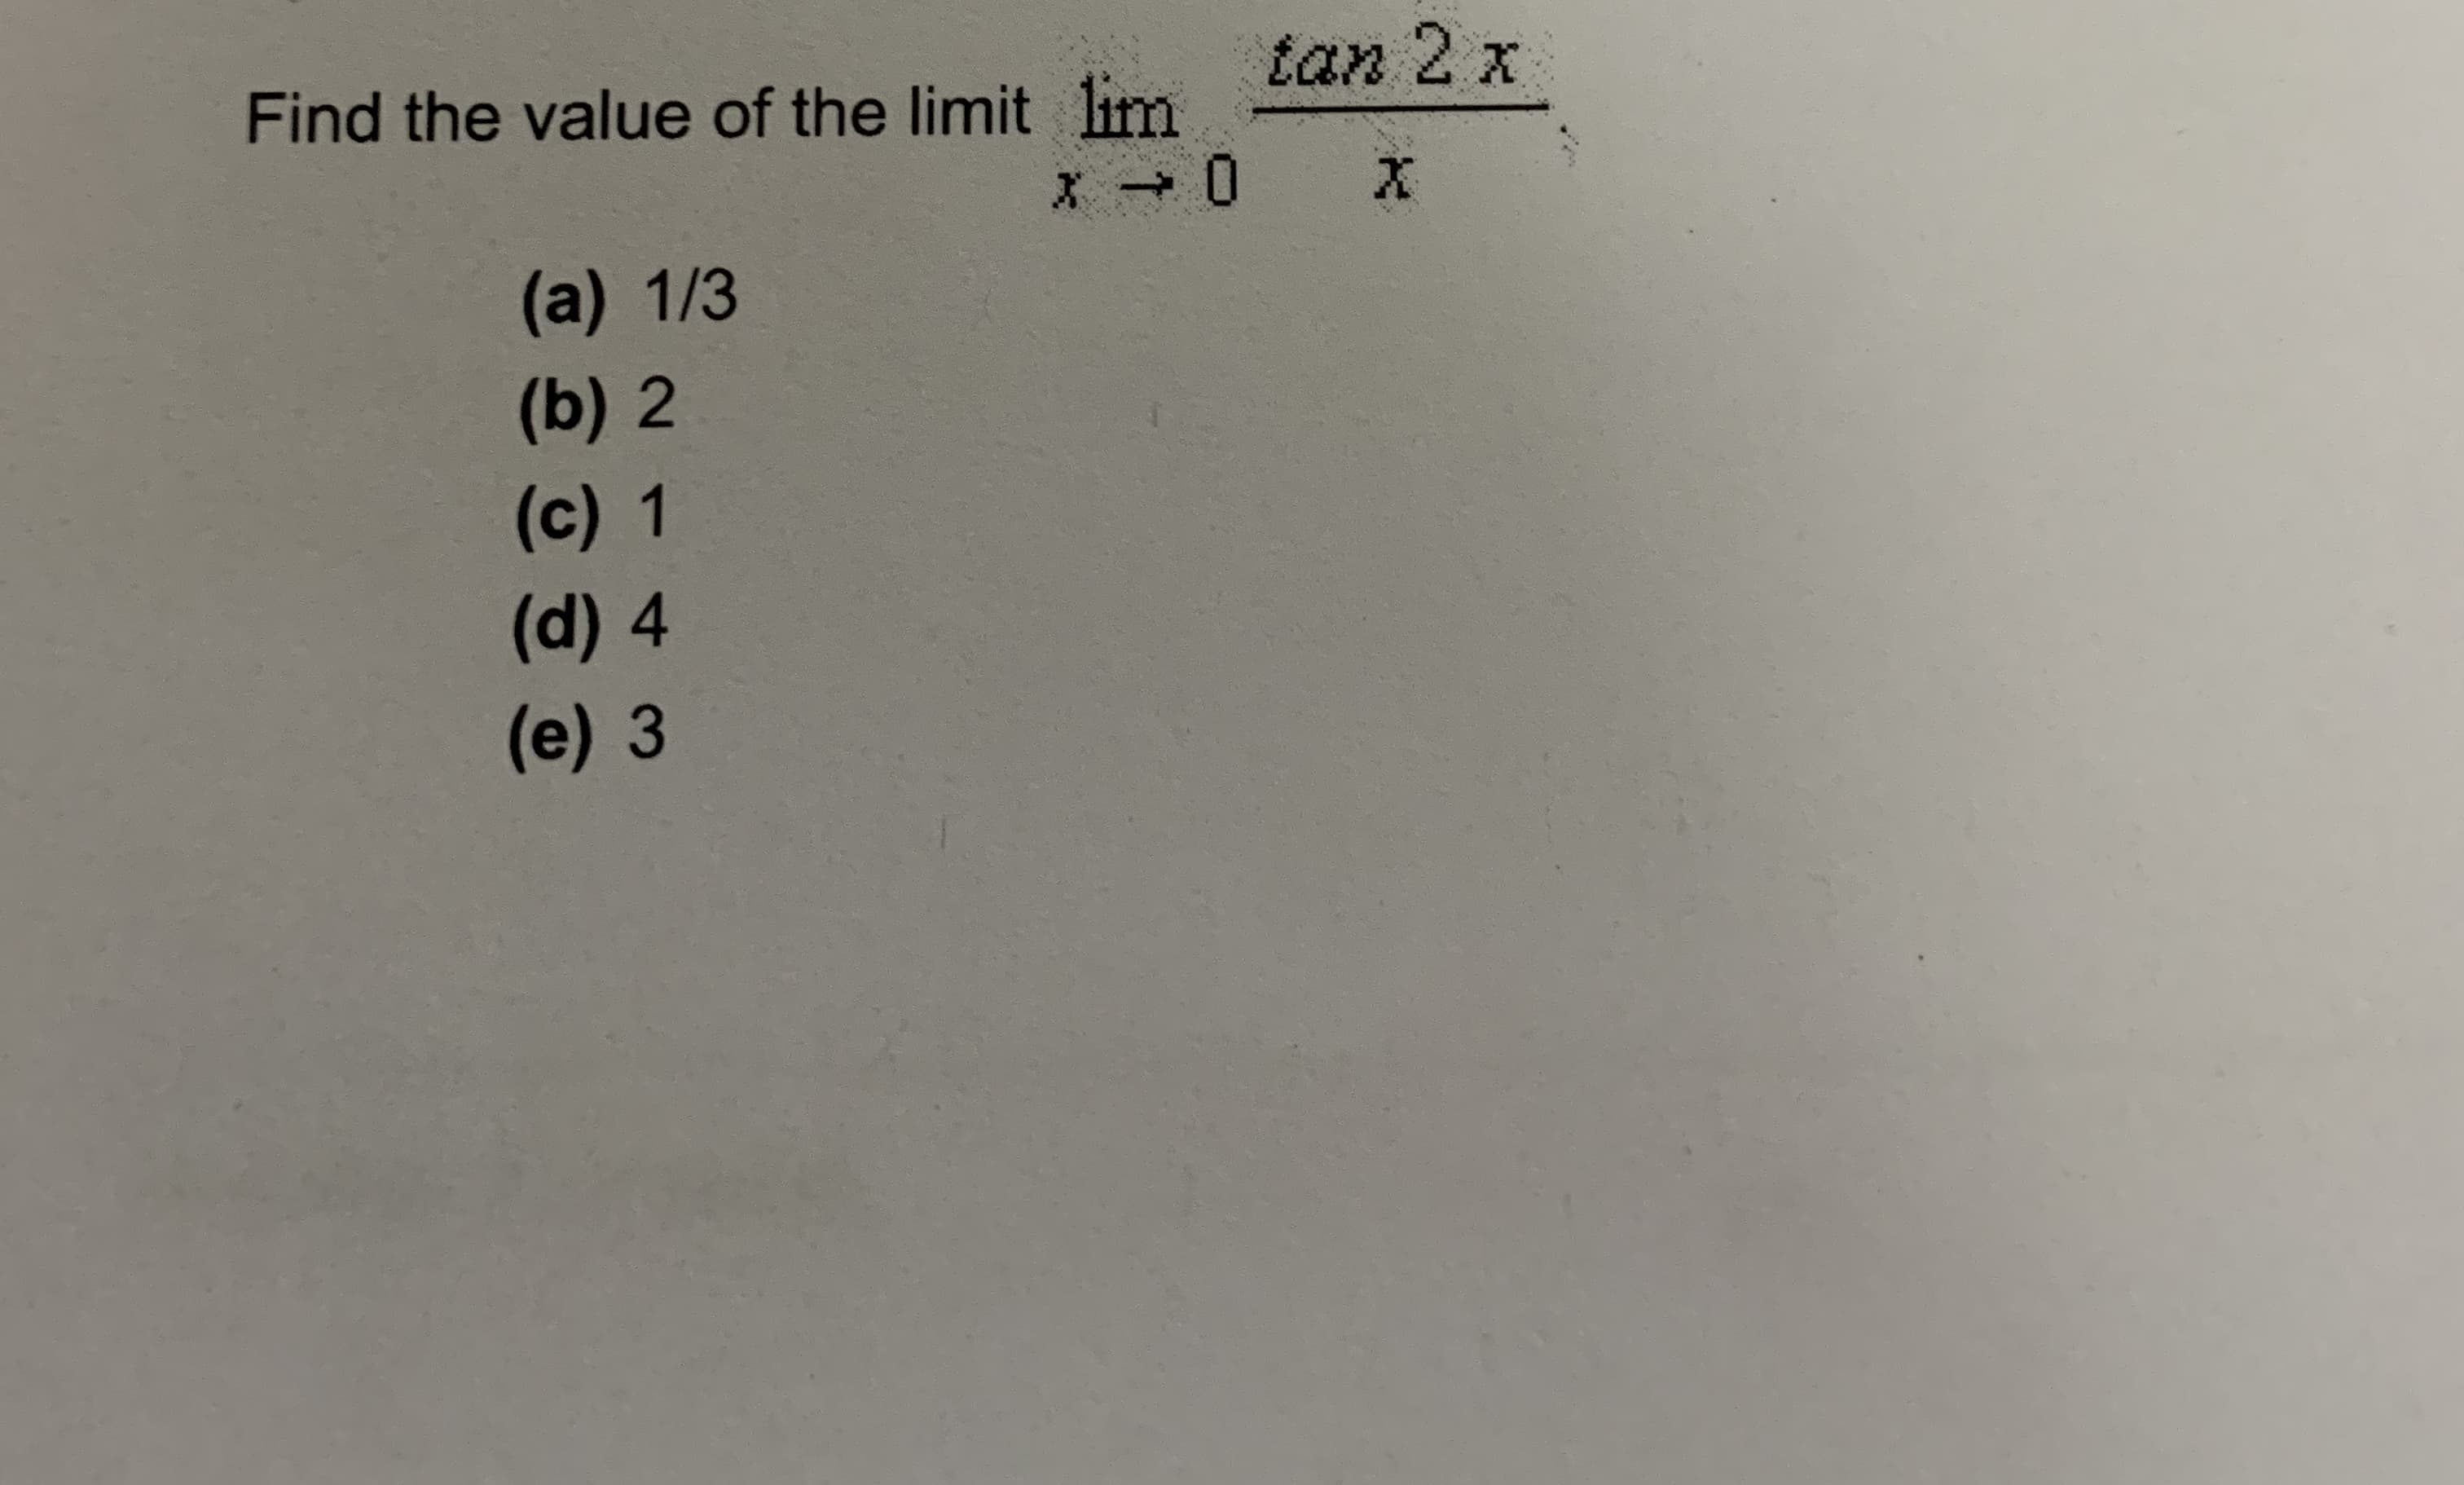 Find the value of the limit lim
tan 2 x
(a) 1/3
(b) 2
(c) 1
(d) 4
(e) 3
